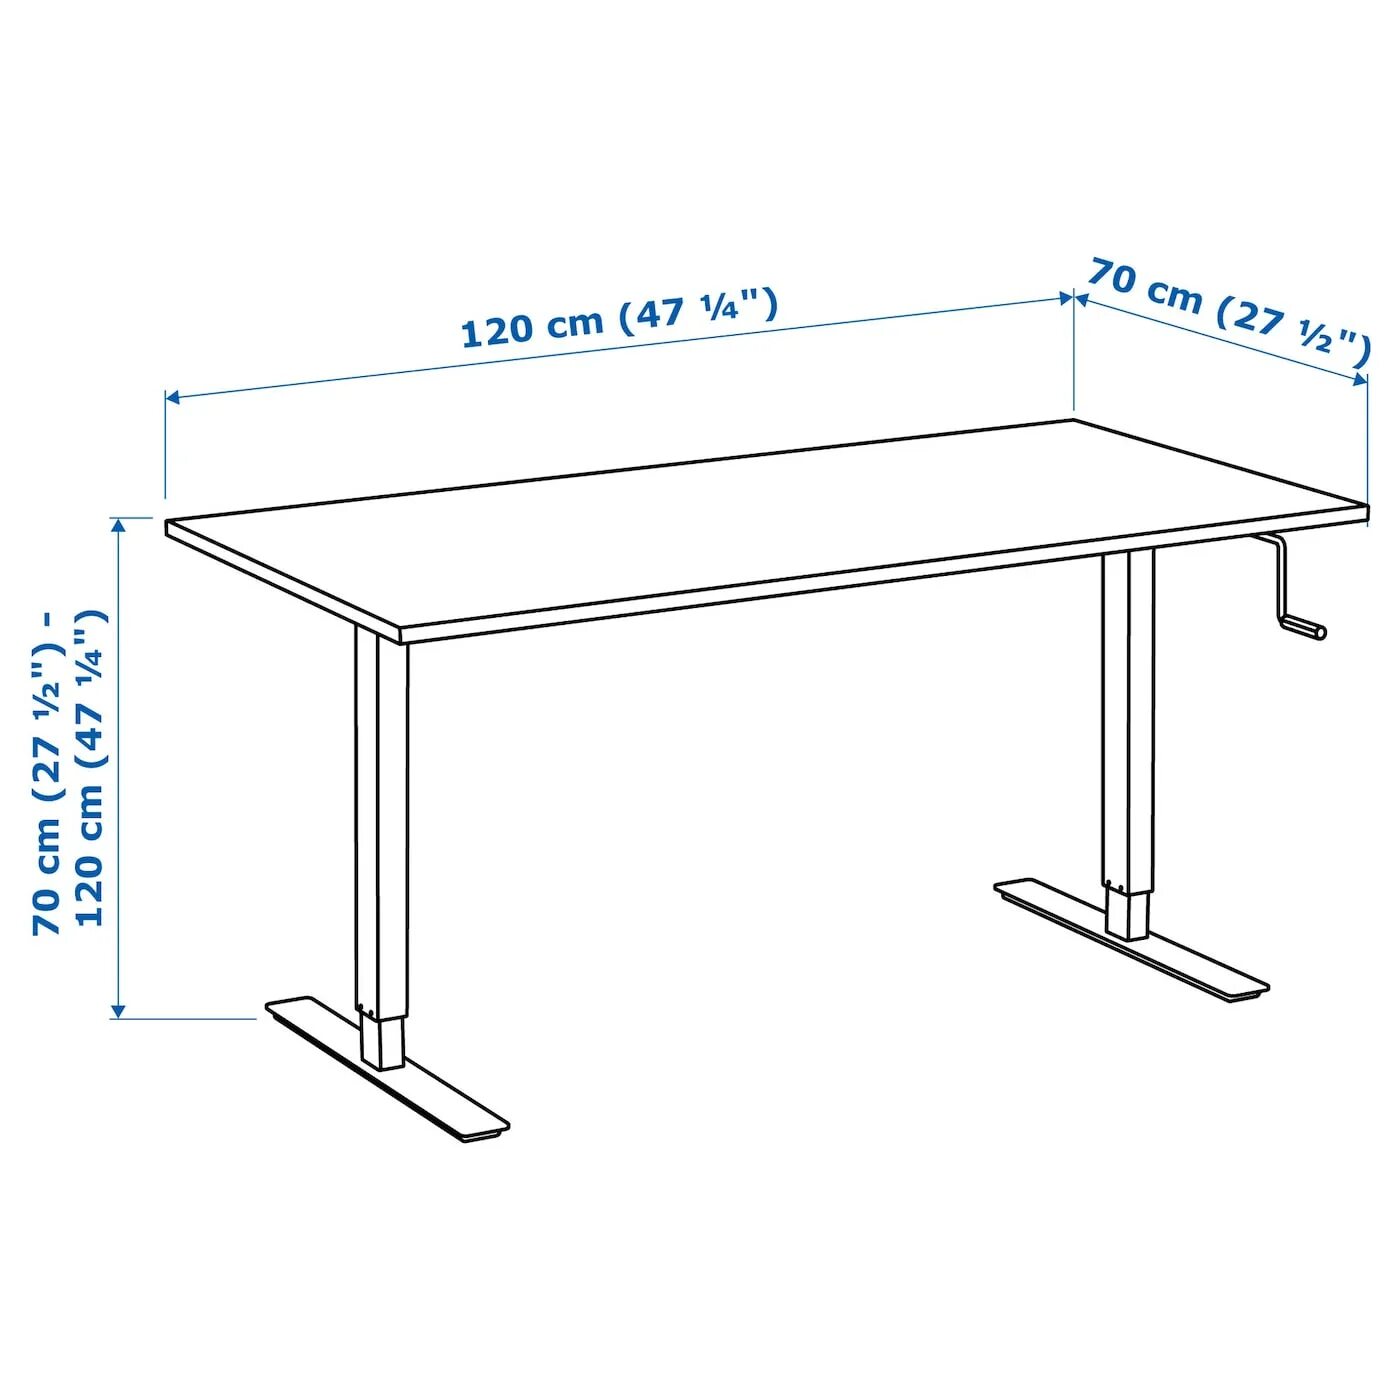 Стол высотой 70 см. Ikea skarsta 160x80. Ikea skarsta стол. Стол икеа регулируемый по высоте. Регулируемый стол икеа СКАРСТА.